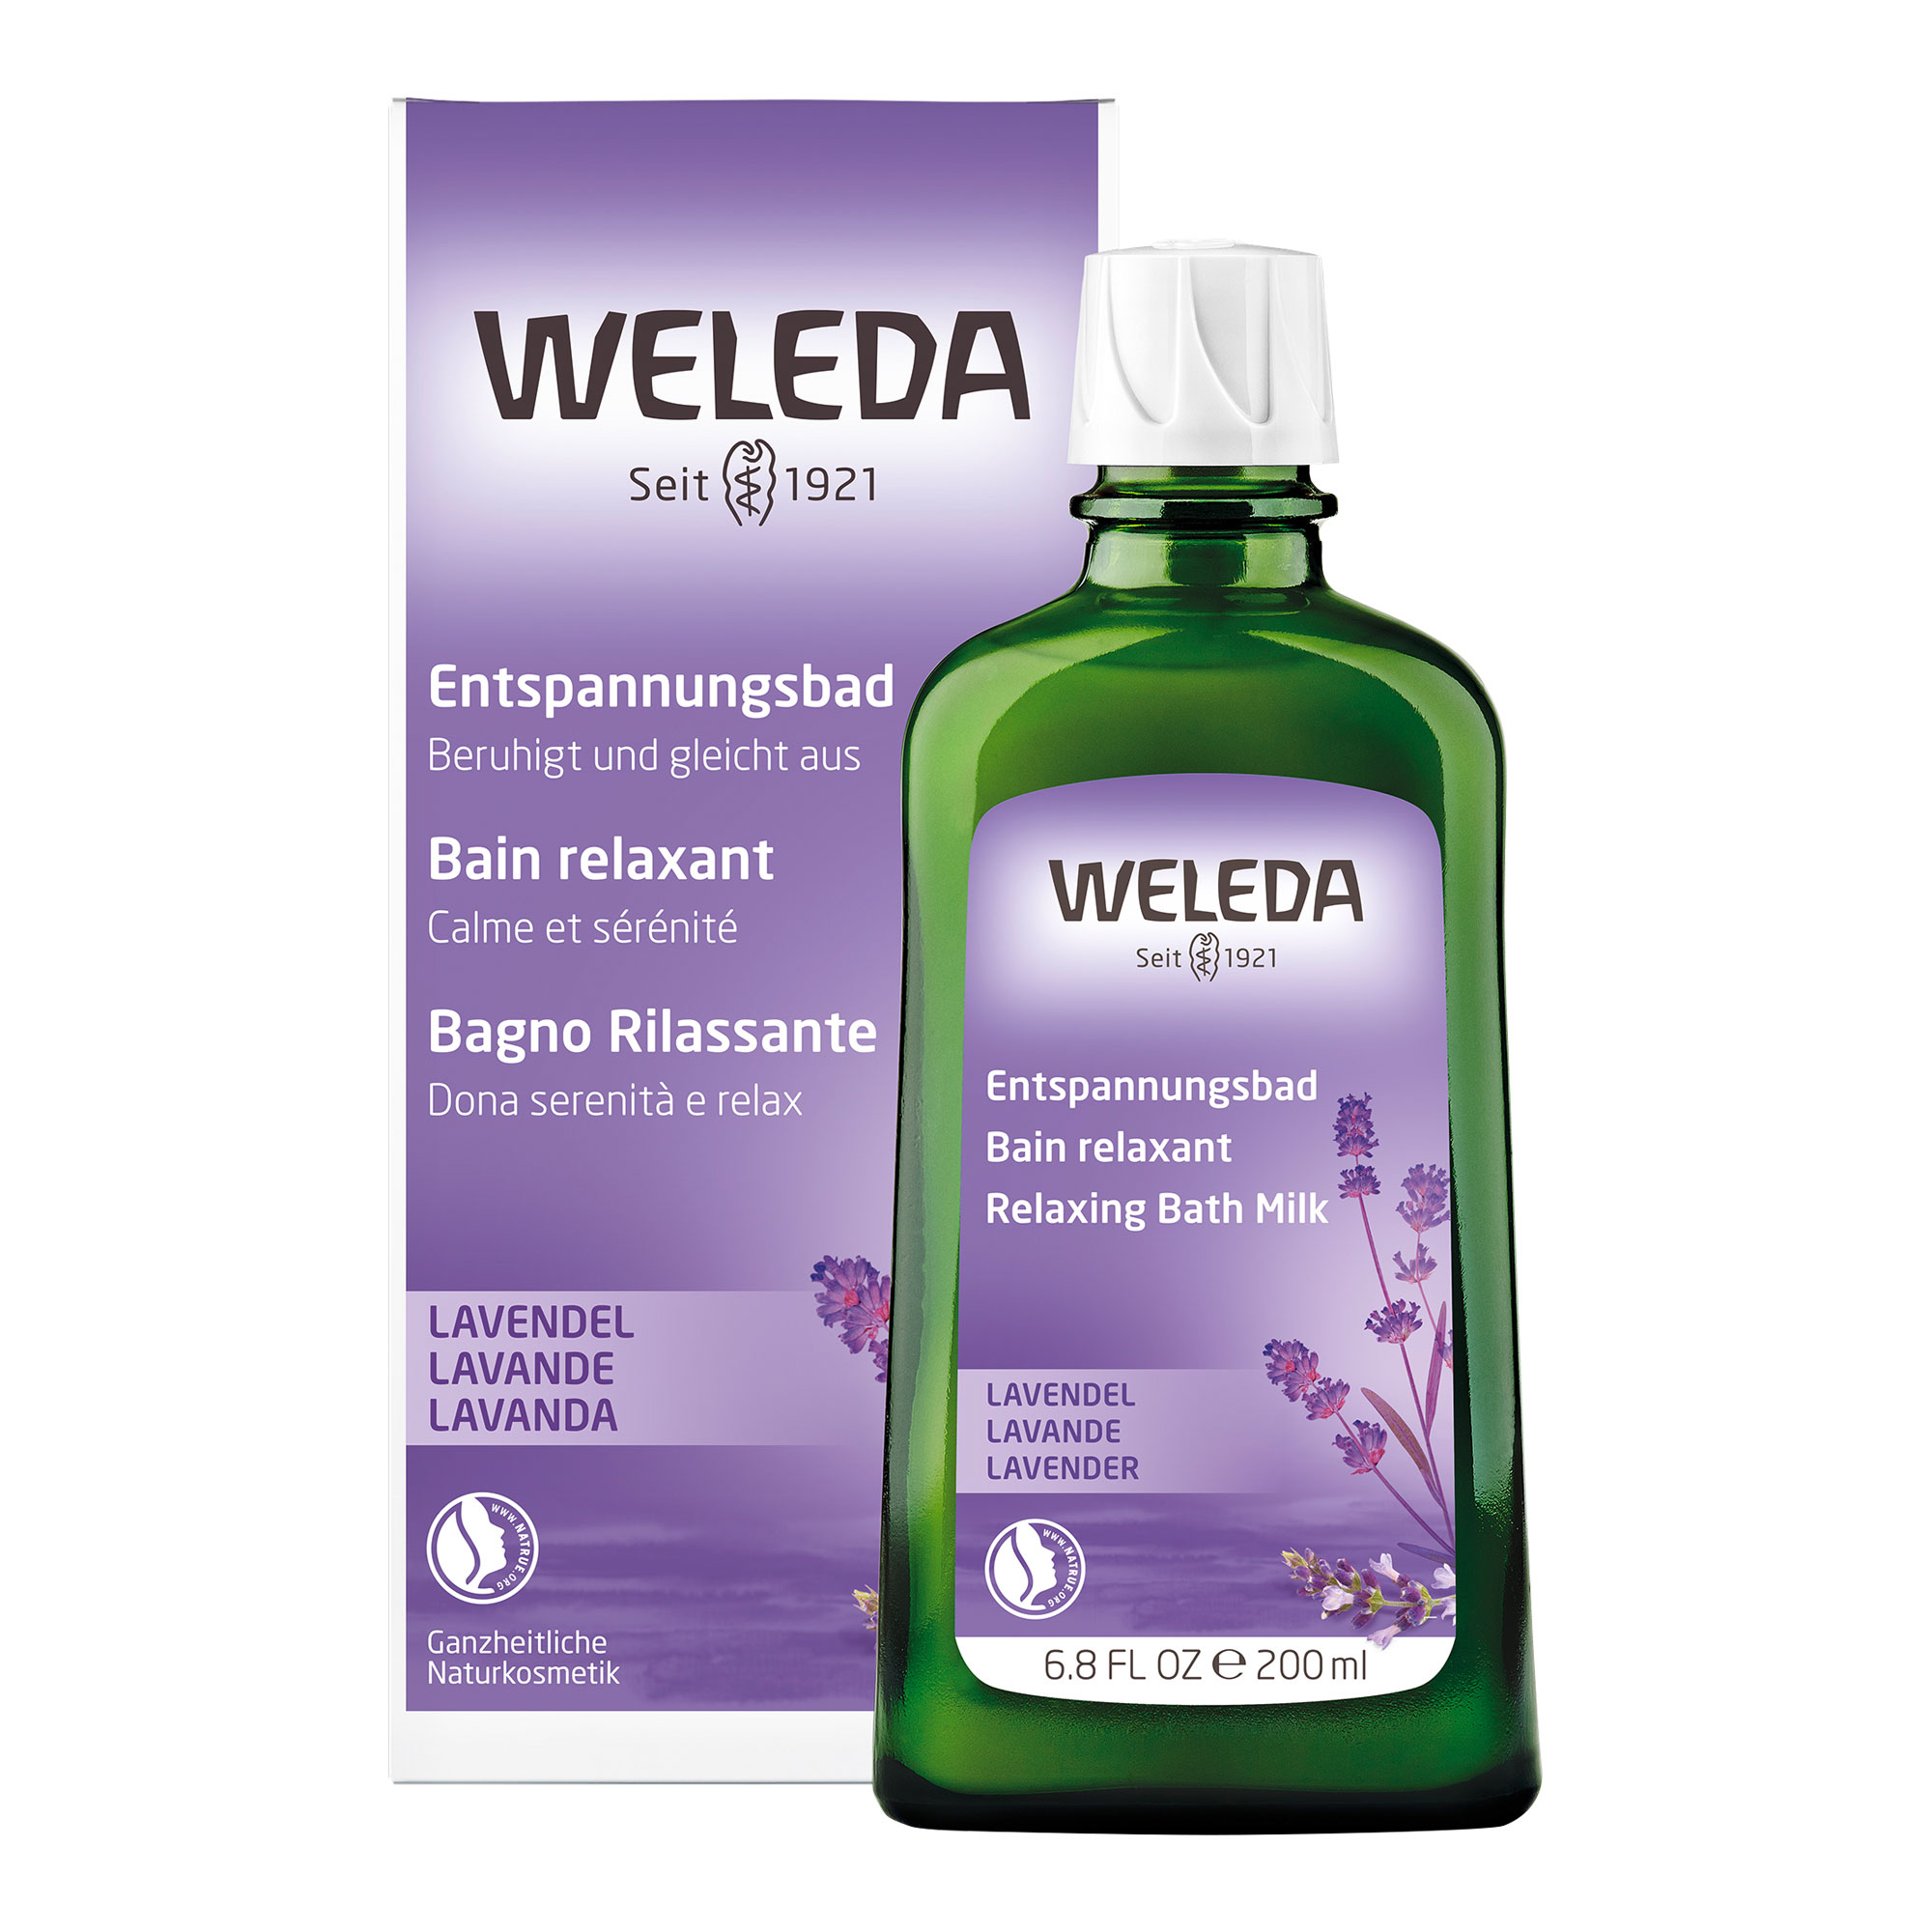 Naturkosmetik-Badezusatz mit echtem ätherischen Lavendelöl beruhigt, entspannt und fördert einen guten Schlaf.